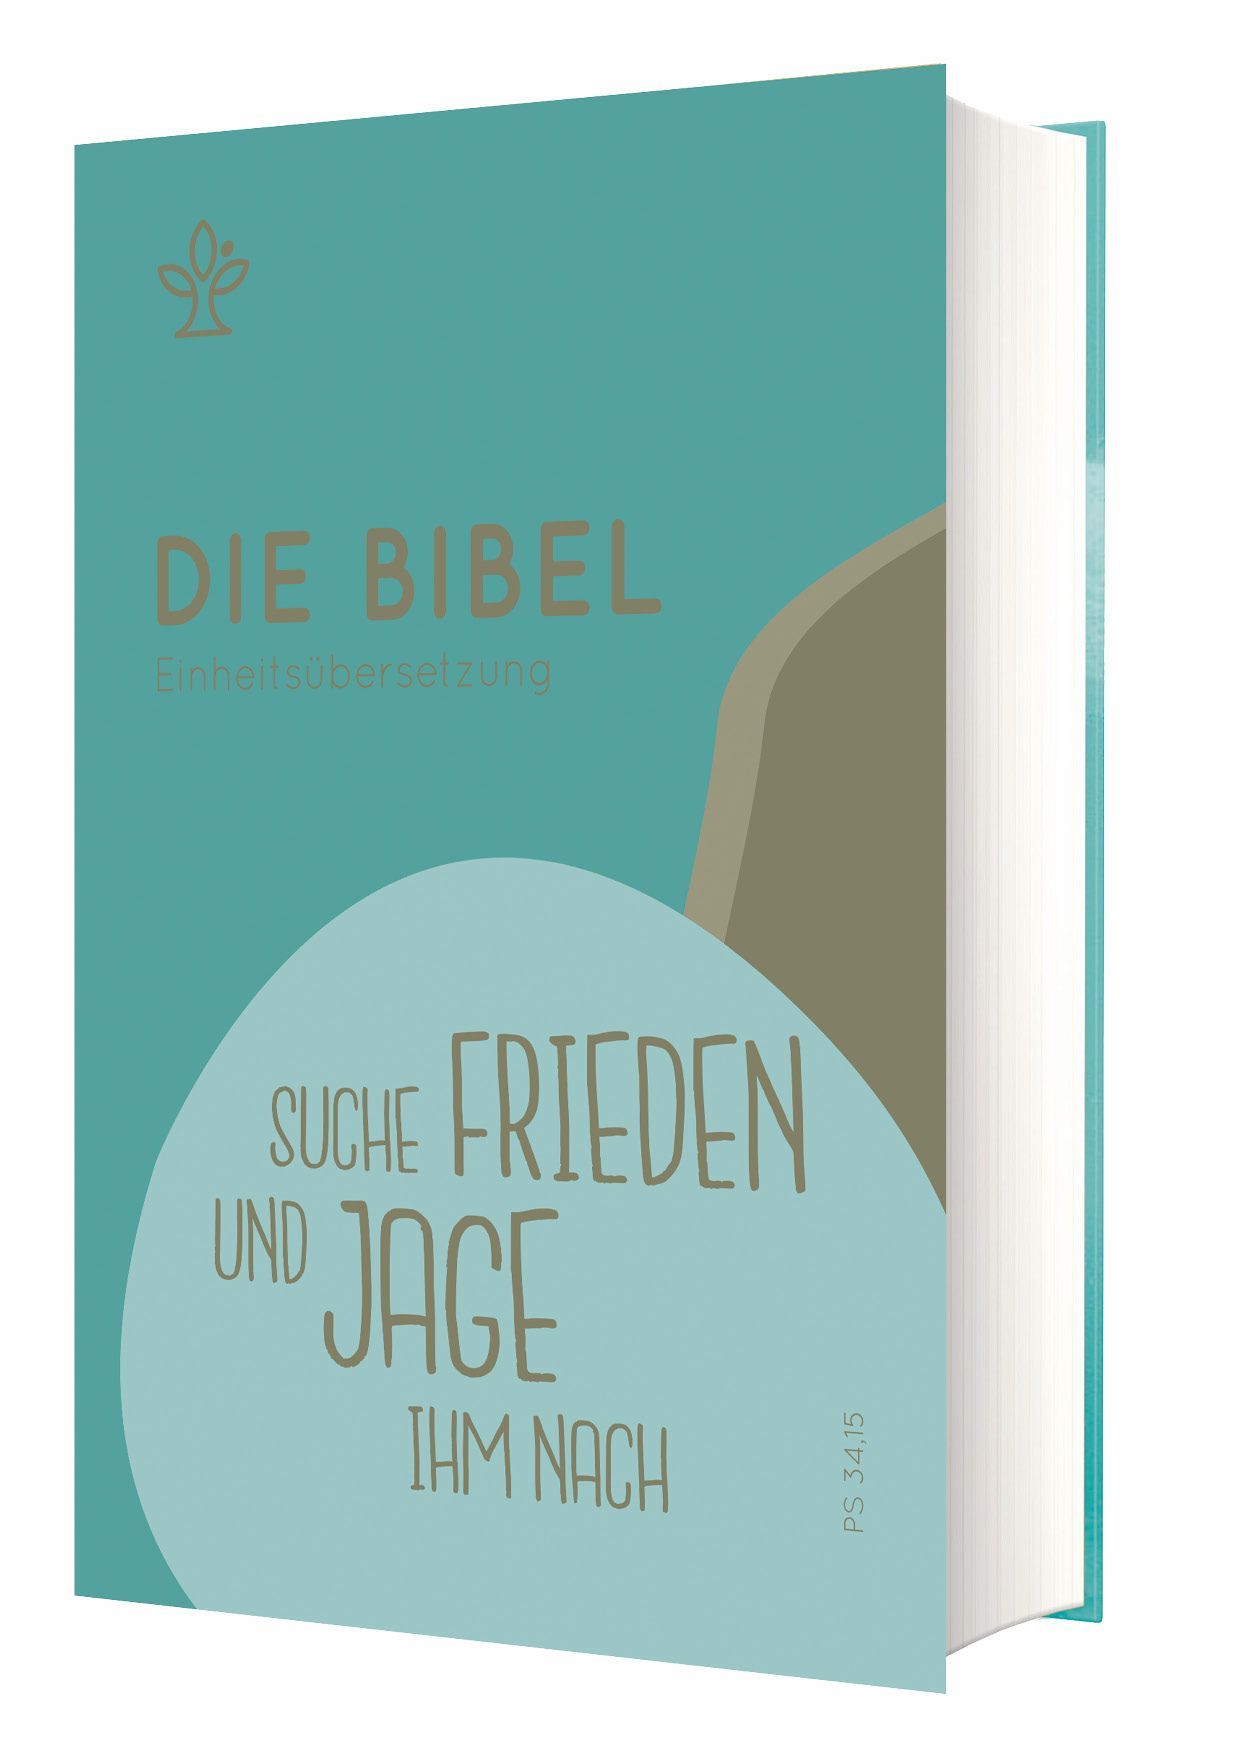 Die Bibel - Einheitsübersetzung - Schulbibel "Suche Frieden und jage ihm nach"